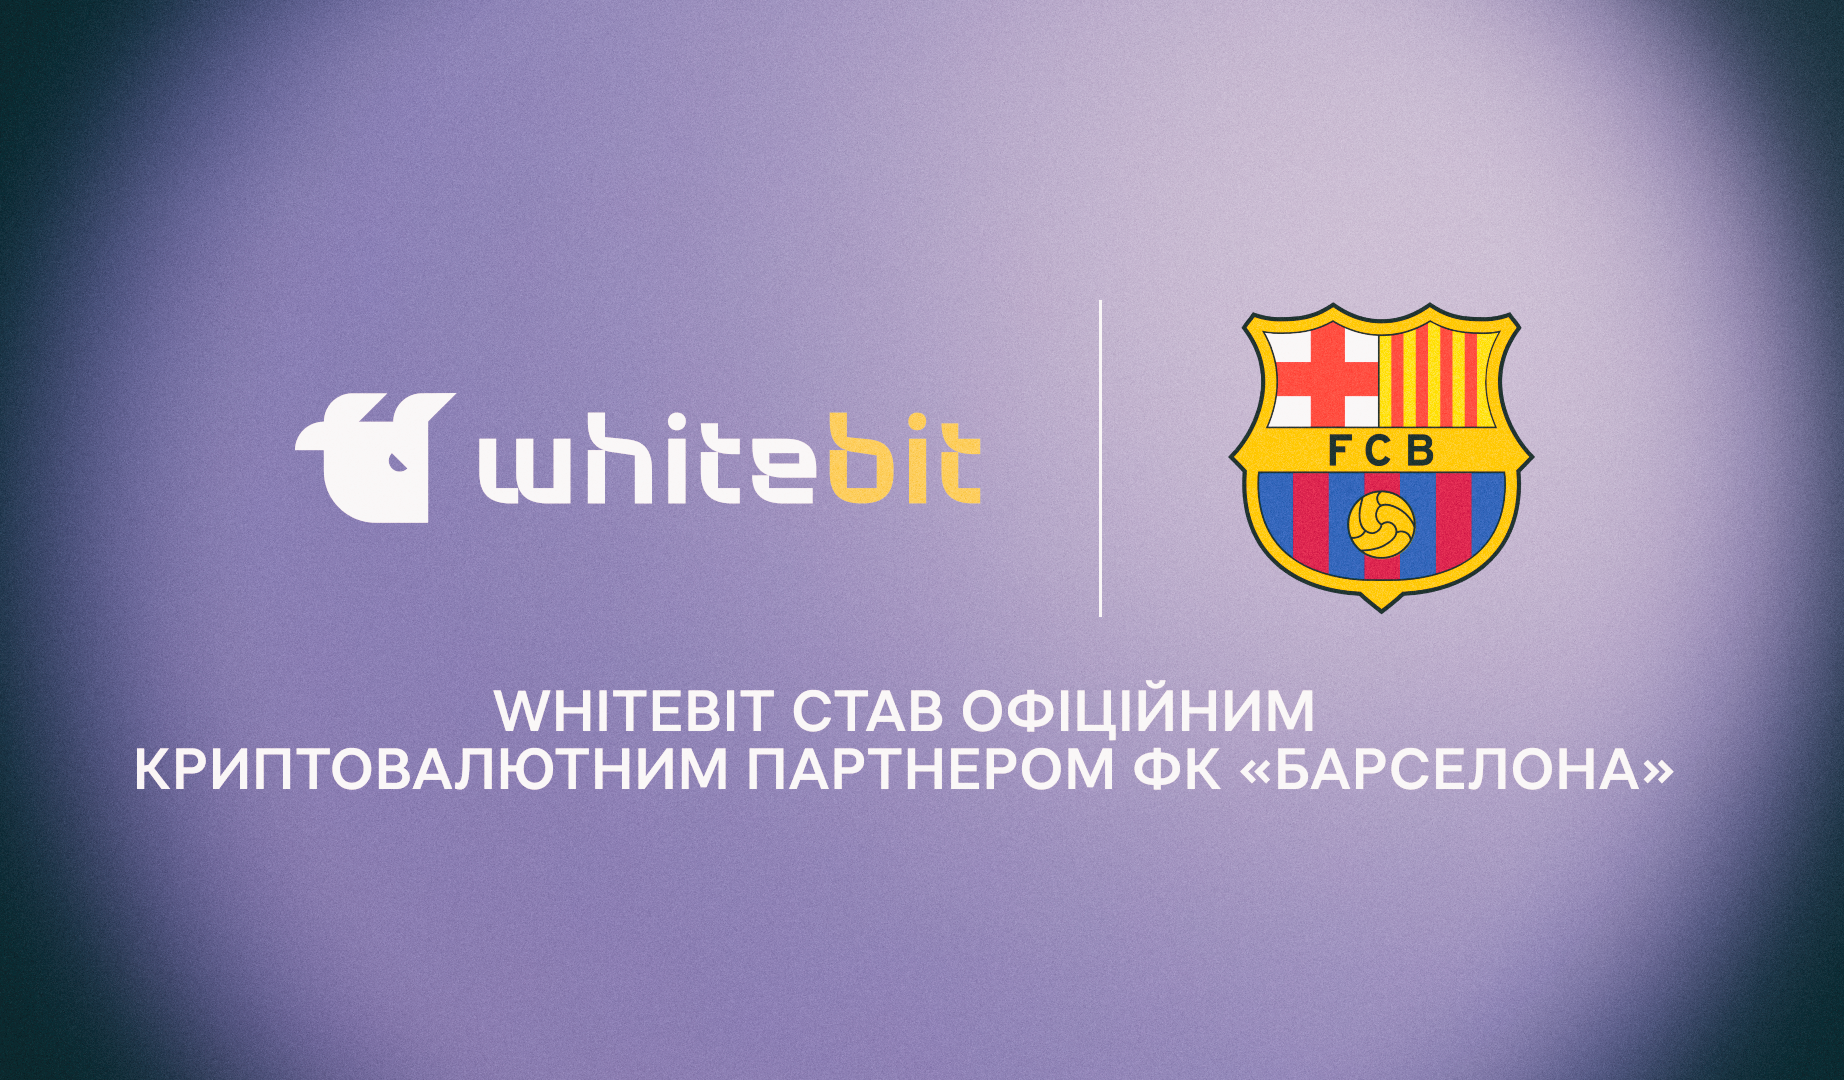 Українська криптовалютна біржа WhiteBIT стала офіційним партнером ФК «Барселона»